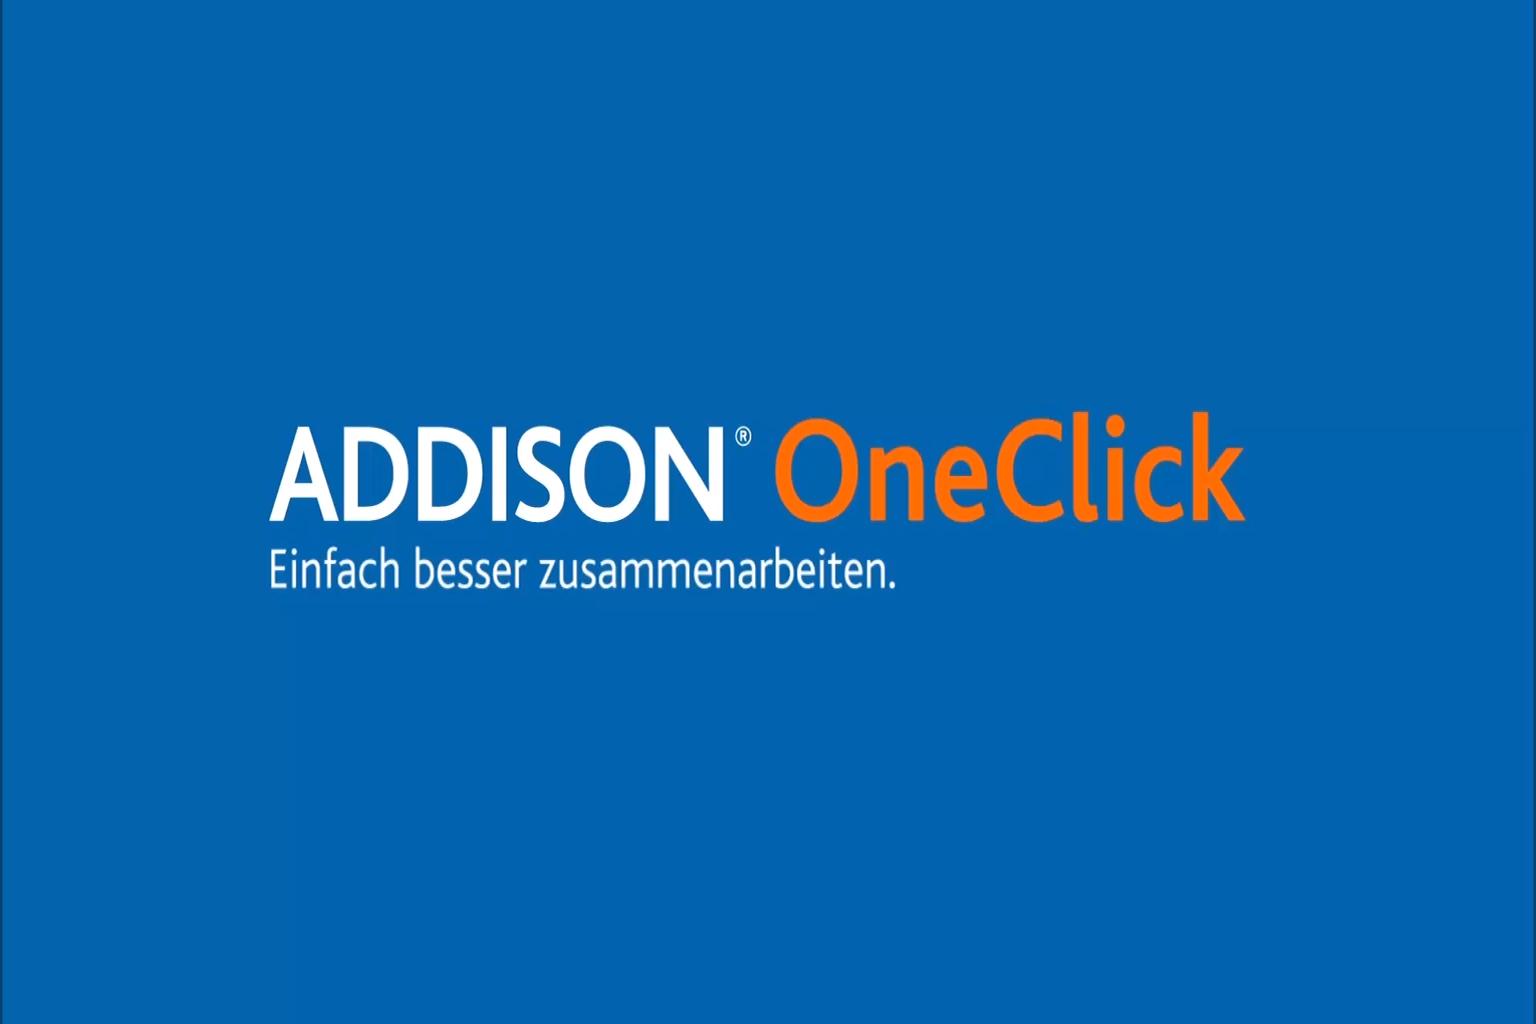 ADDISON OneClick macht das Mandantenleben einfacher